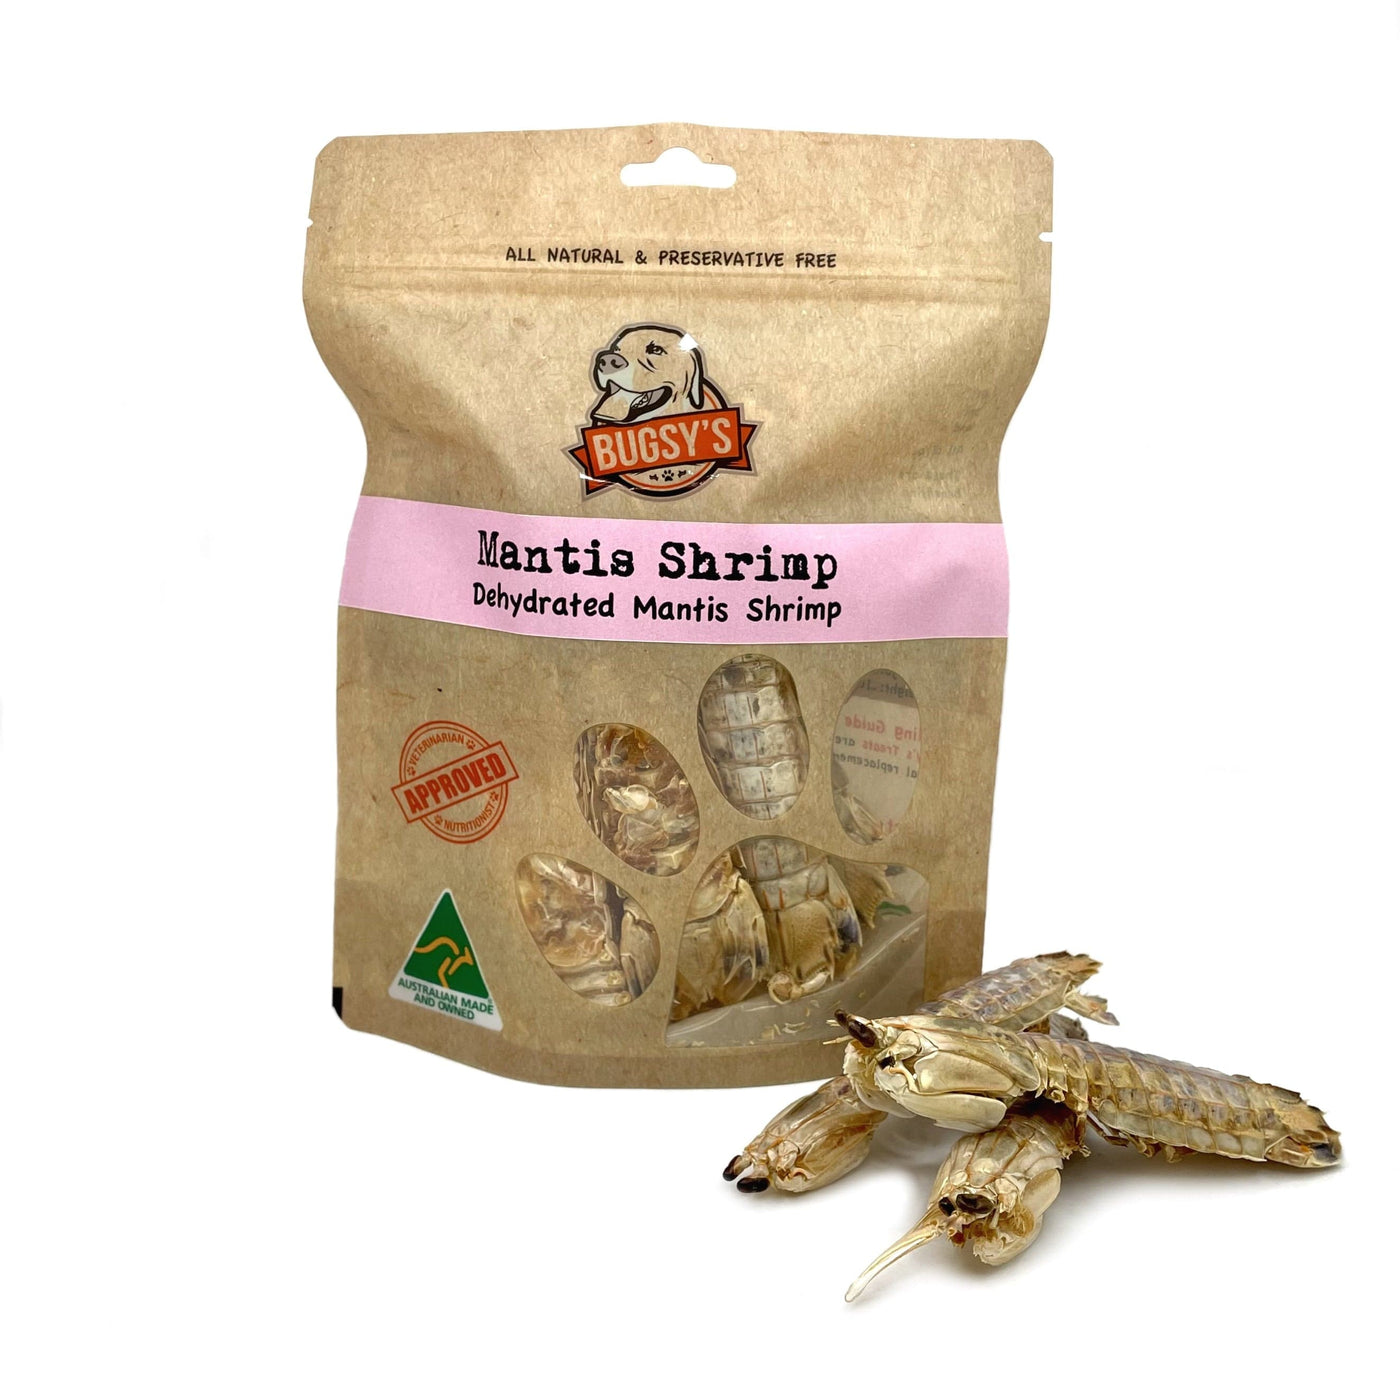 Australian MANTIS SHRIMP Snack for Dogs